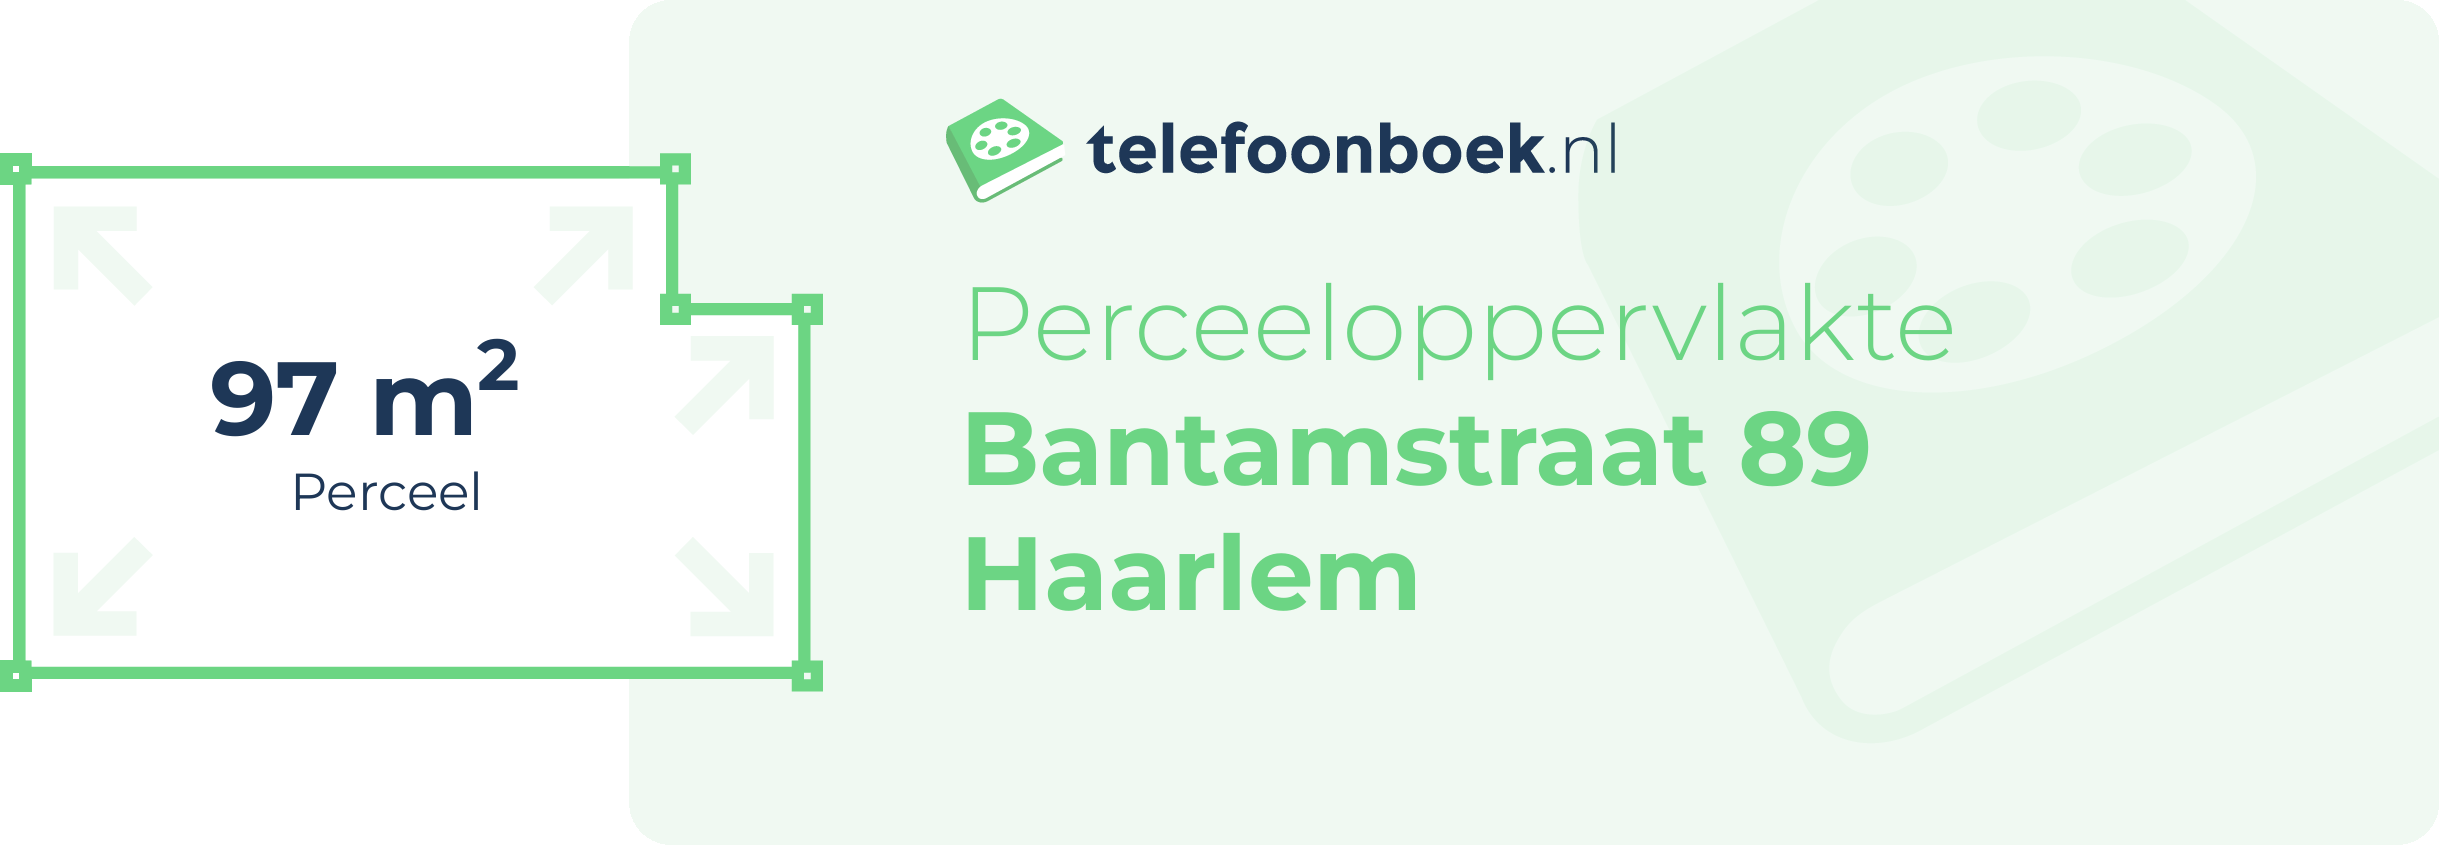 Perceeloppervlakte Bantamstraat 89 Haarlem